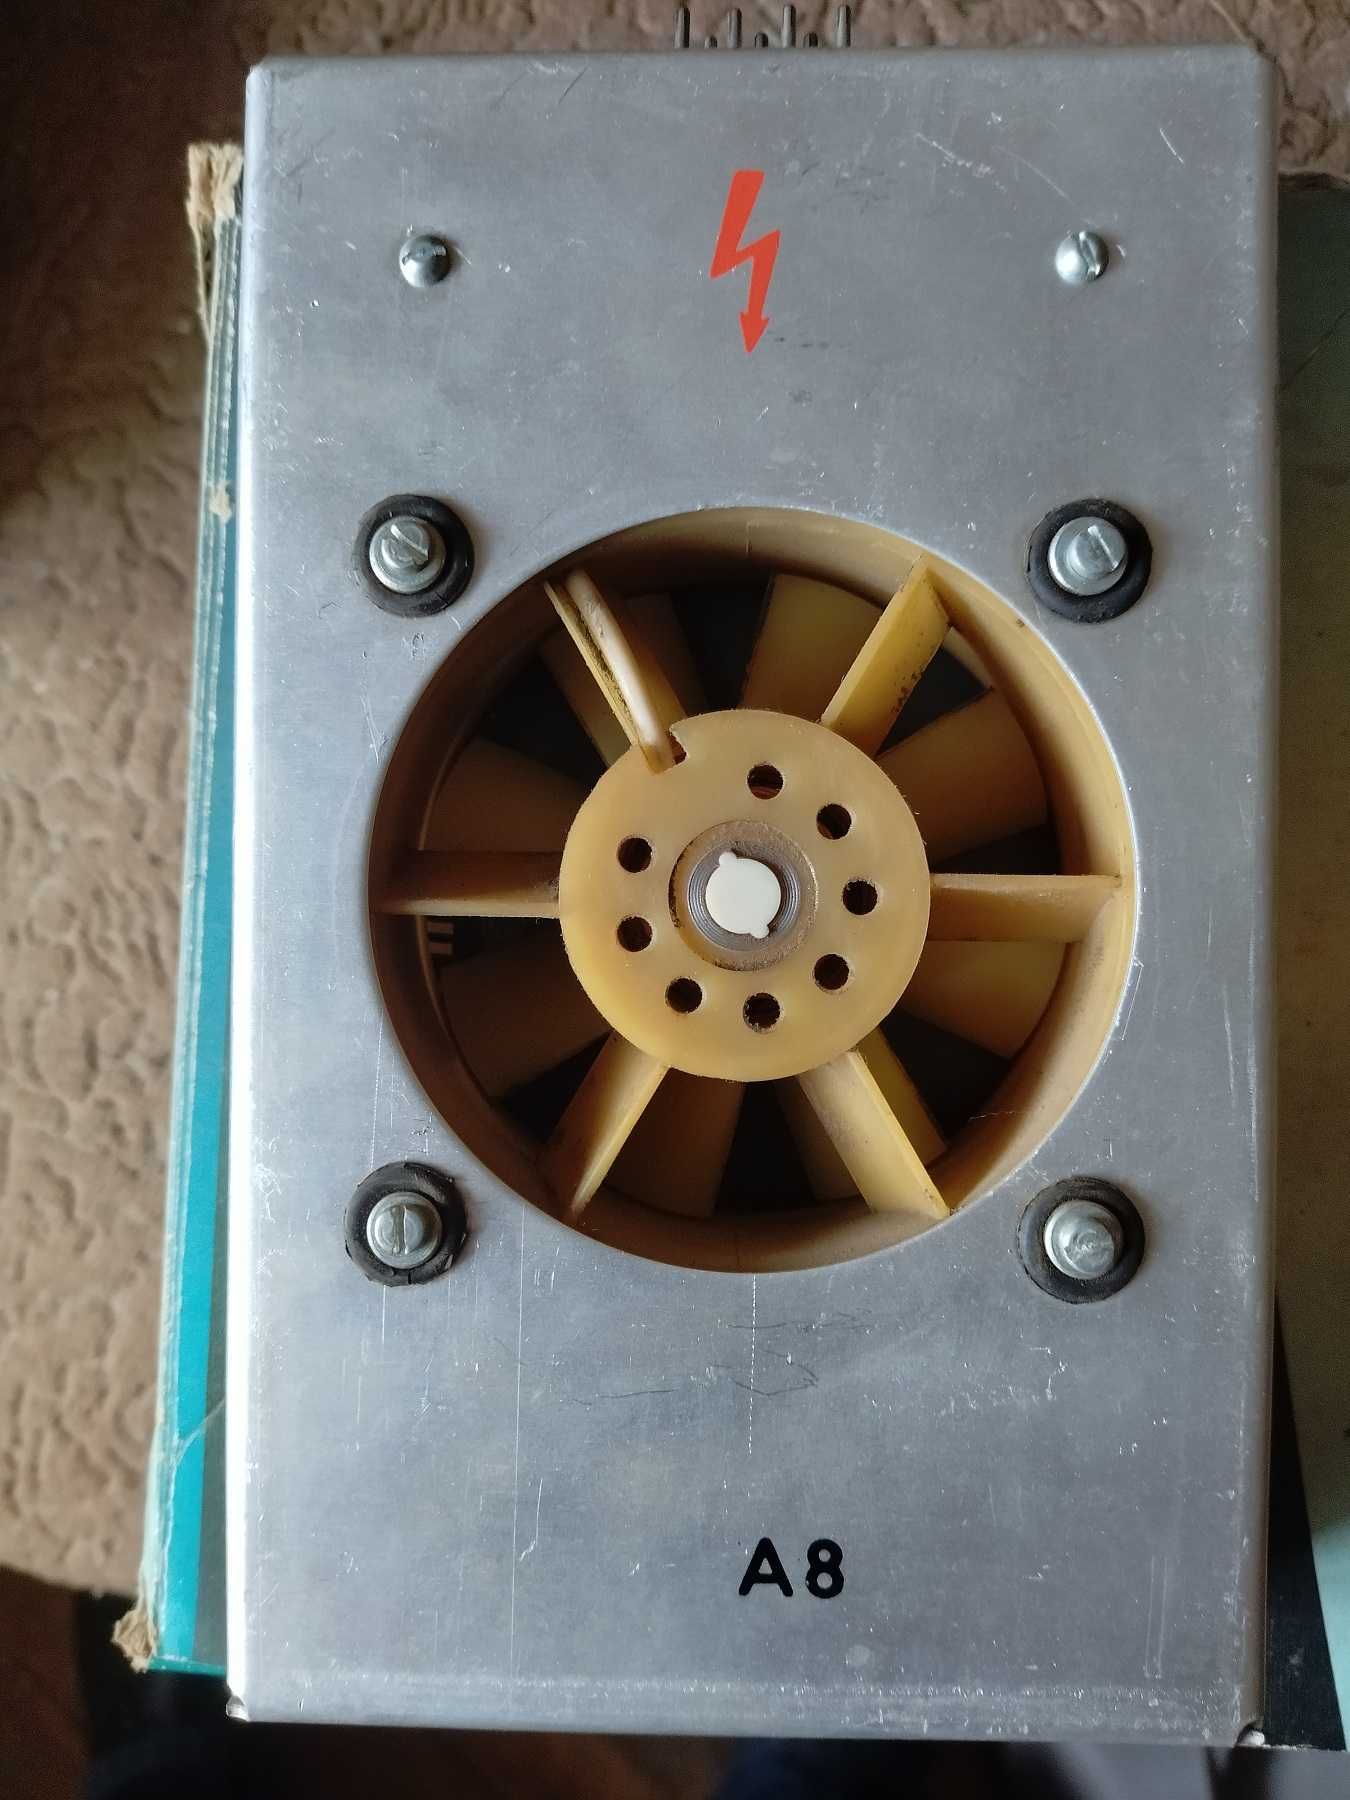 Вентилятор приборный ТС7063.Н002 (времен СССР)